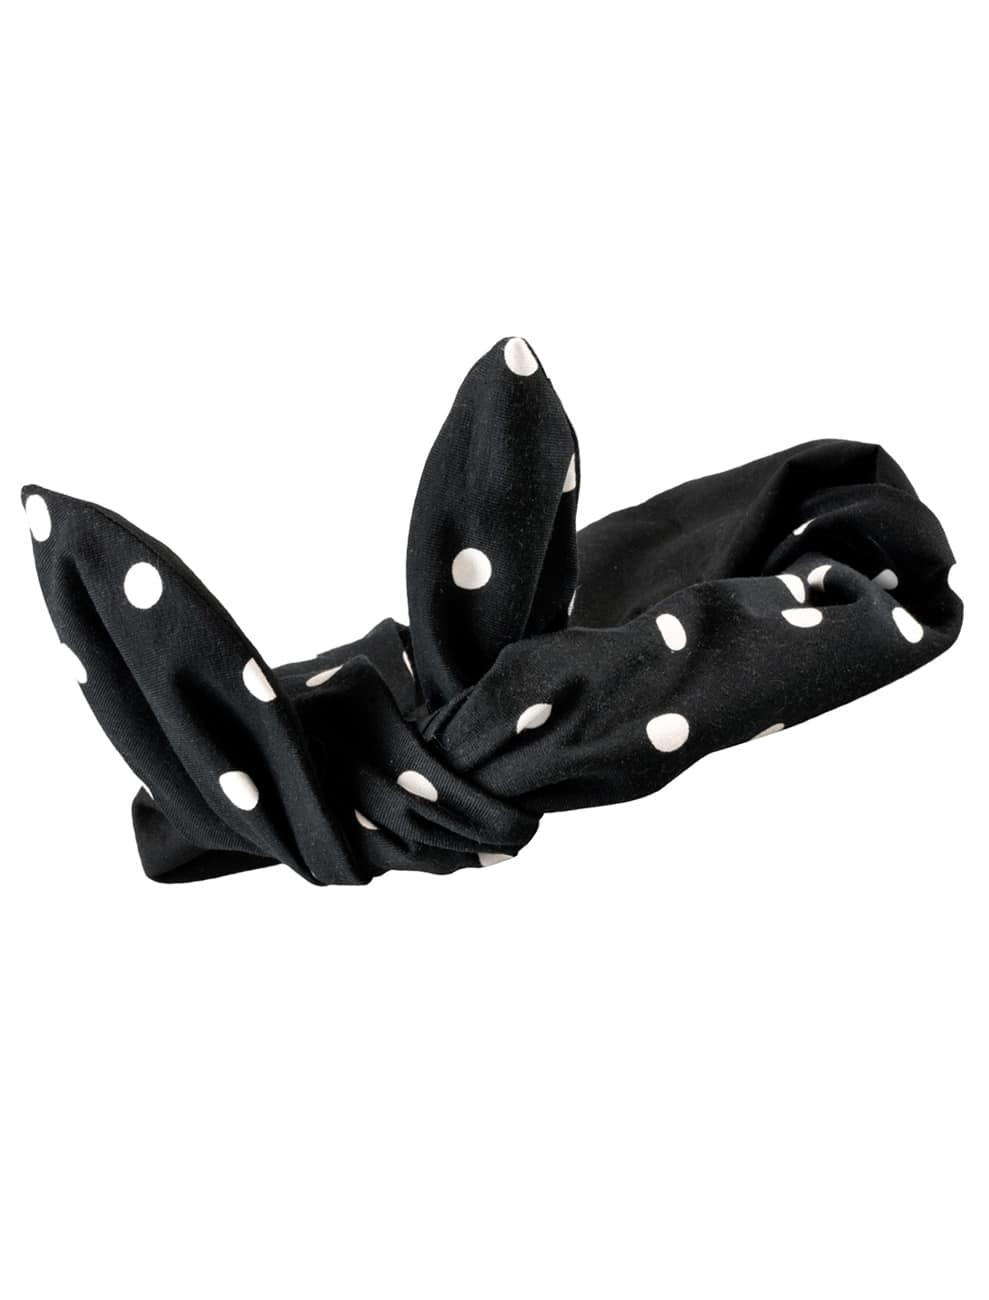 Haarband Rock´n Roll schwarz mit Punkten weiß